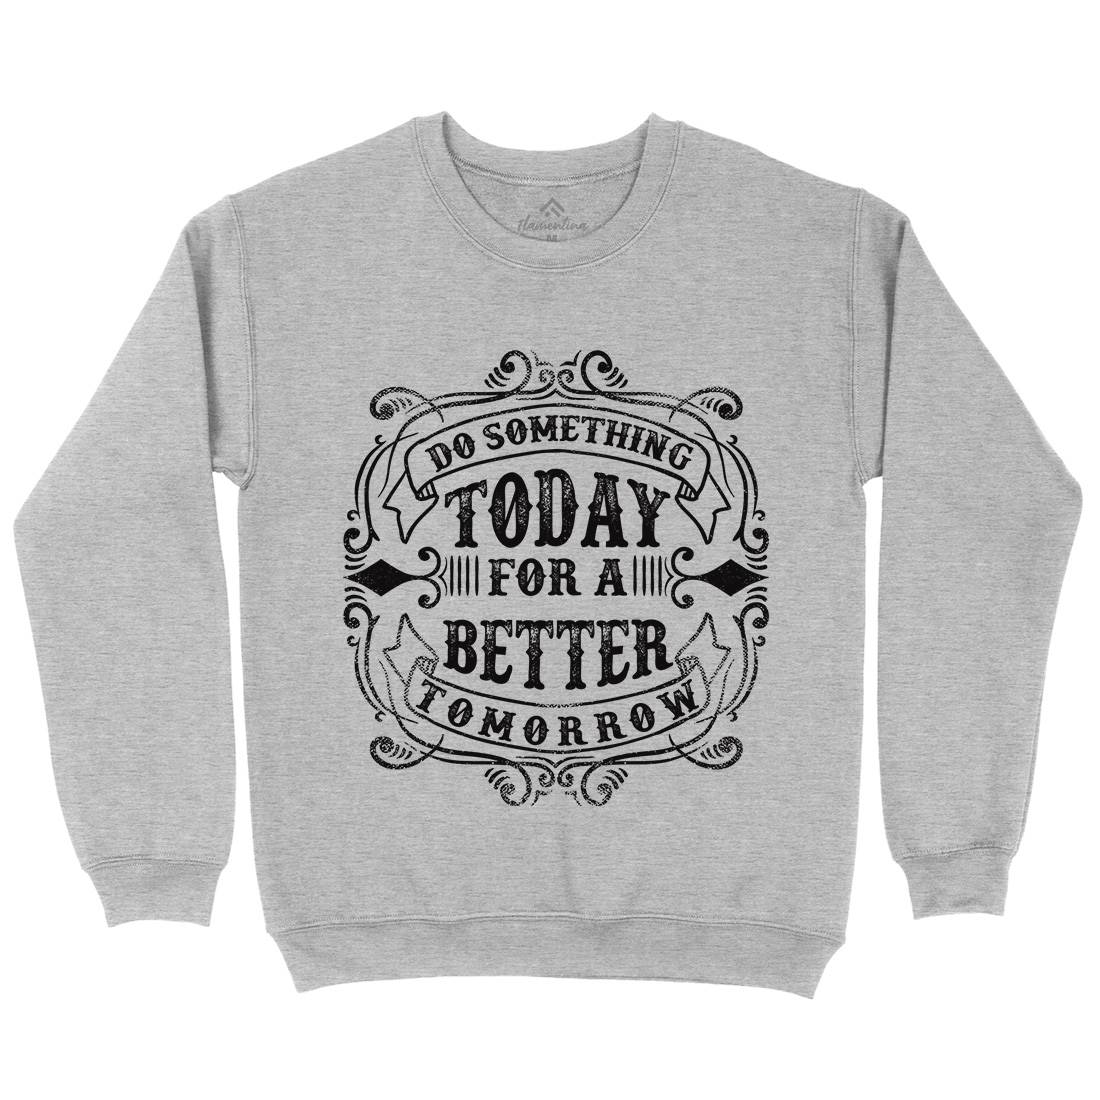 Do Something Today Kids Crew Neck Sweatshirt Quotes C923